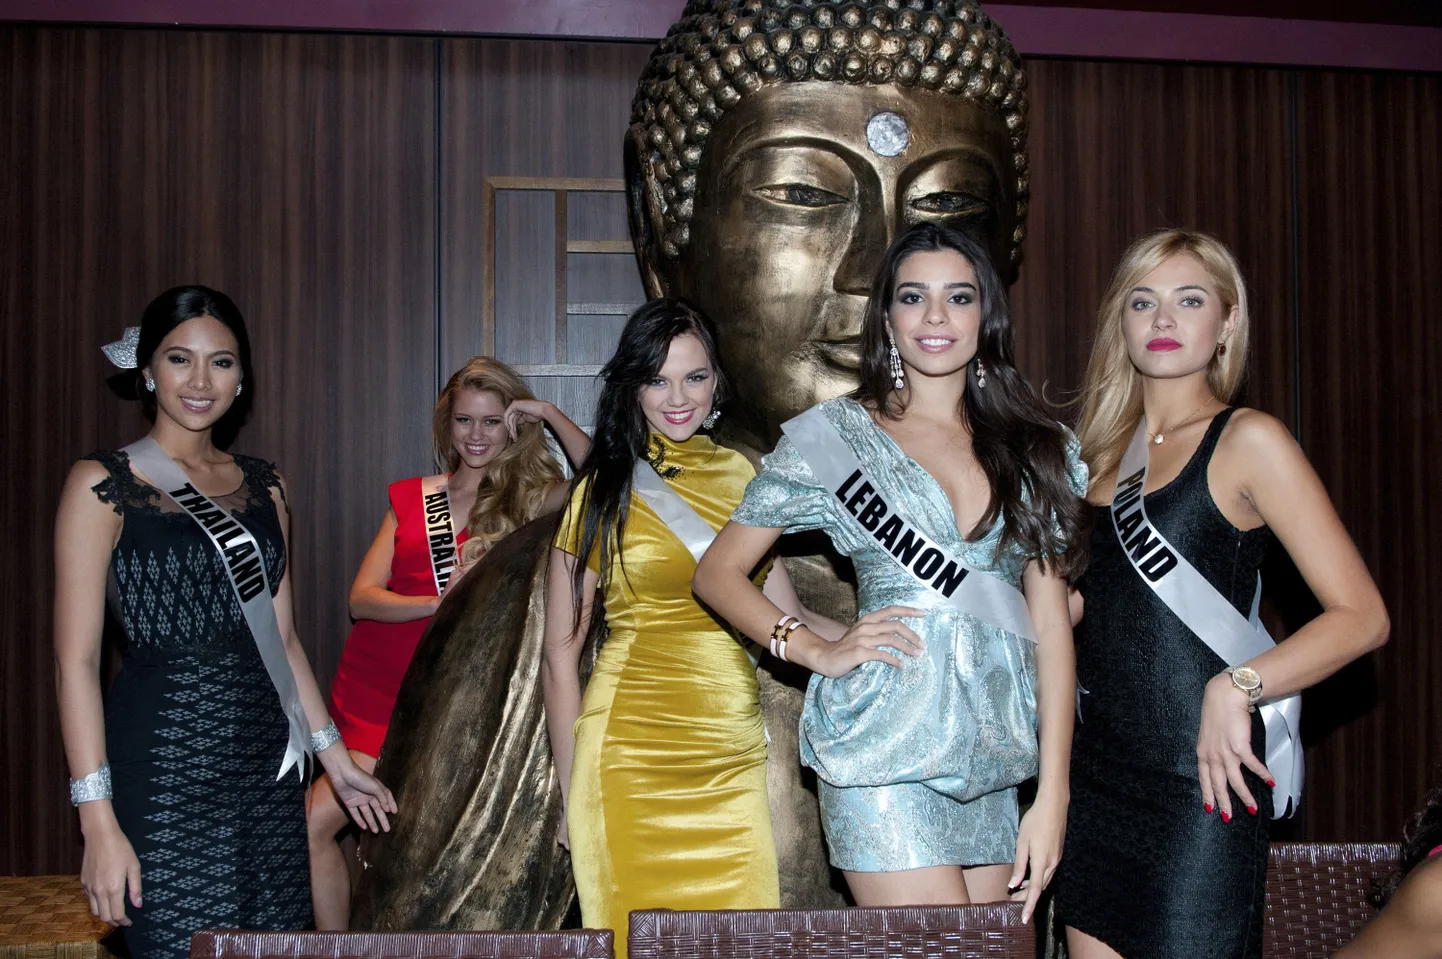 Слева направо: "Мисс Таиланд 2011 Чанасорн Сакорнчан", "Мисс Австралия 2011" Шерри-Ли Биггс, "Мисс Эстония 2011" Мадли Вильсар, "Мисс Ливан 2011" Яра эль Хору-Михаэль и "Мисс Польша 2011" Розалия Манцевич.